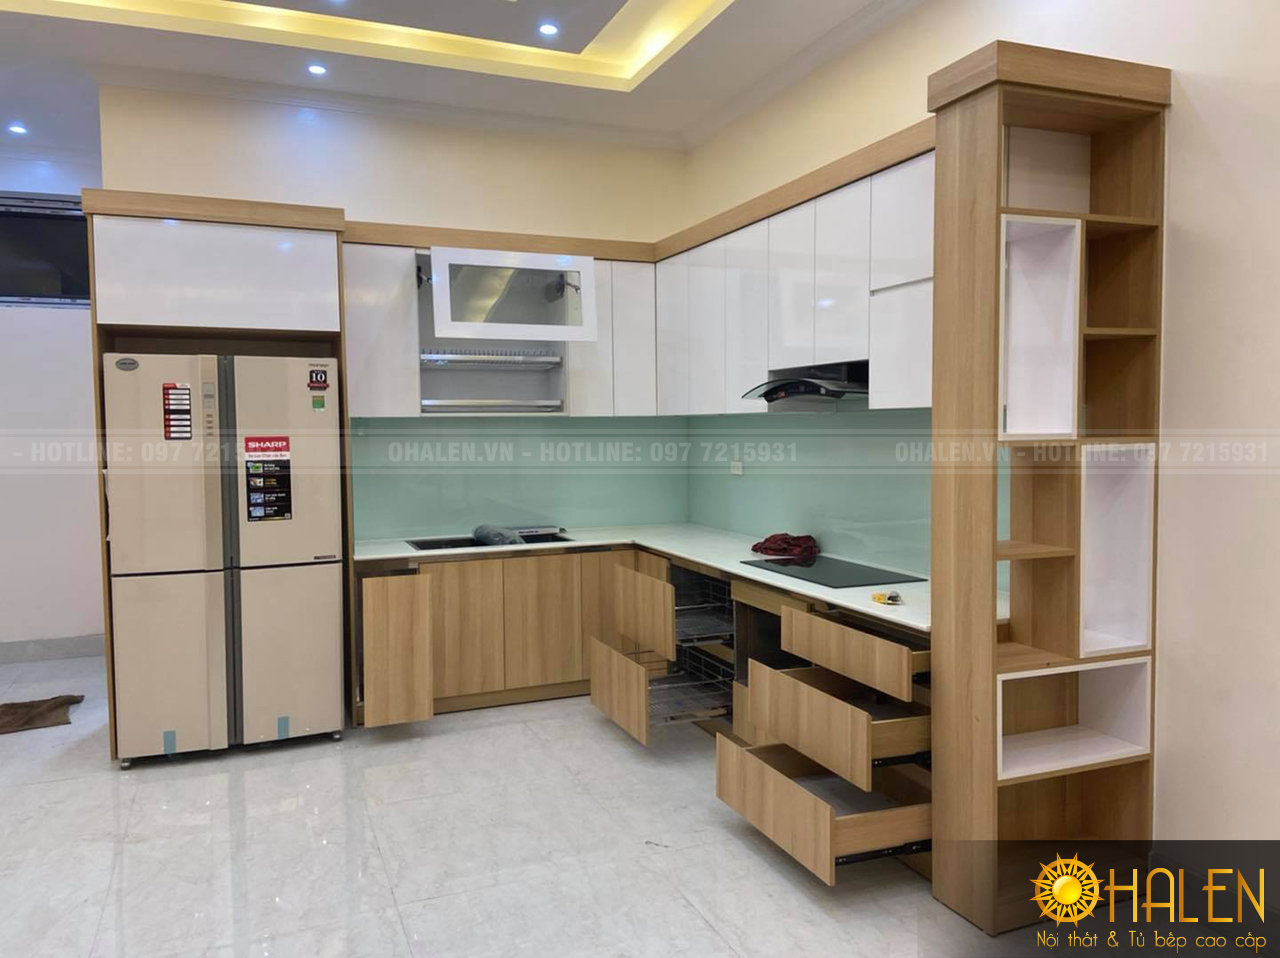 Tủ bếp gỗ Melamine màu sắc nhẹ nhàng tạo cảm giác ấm cúng cho phòng bếp